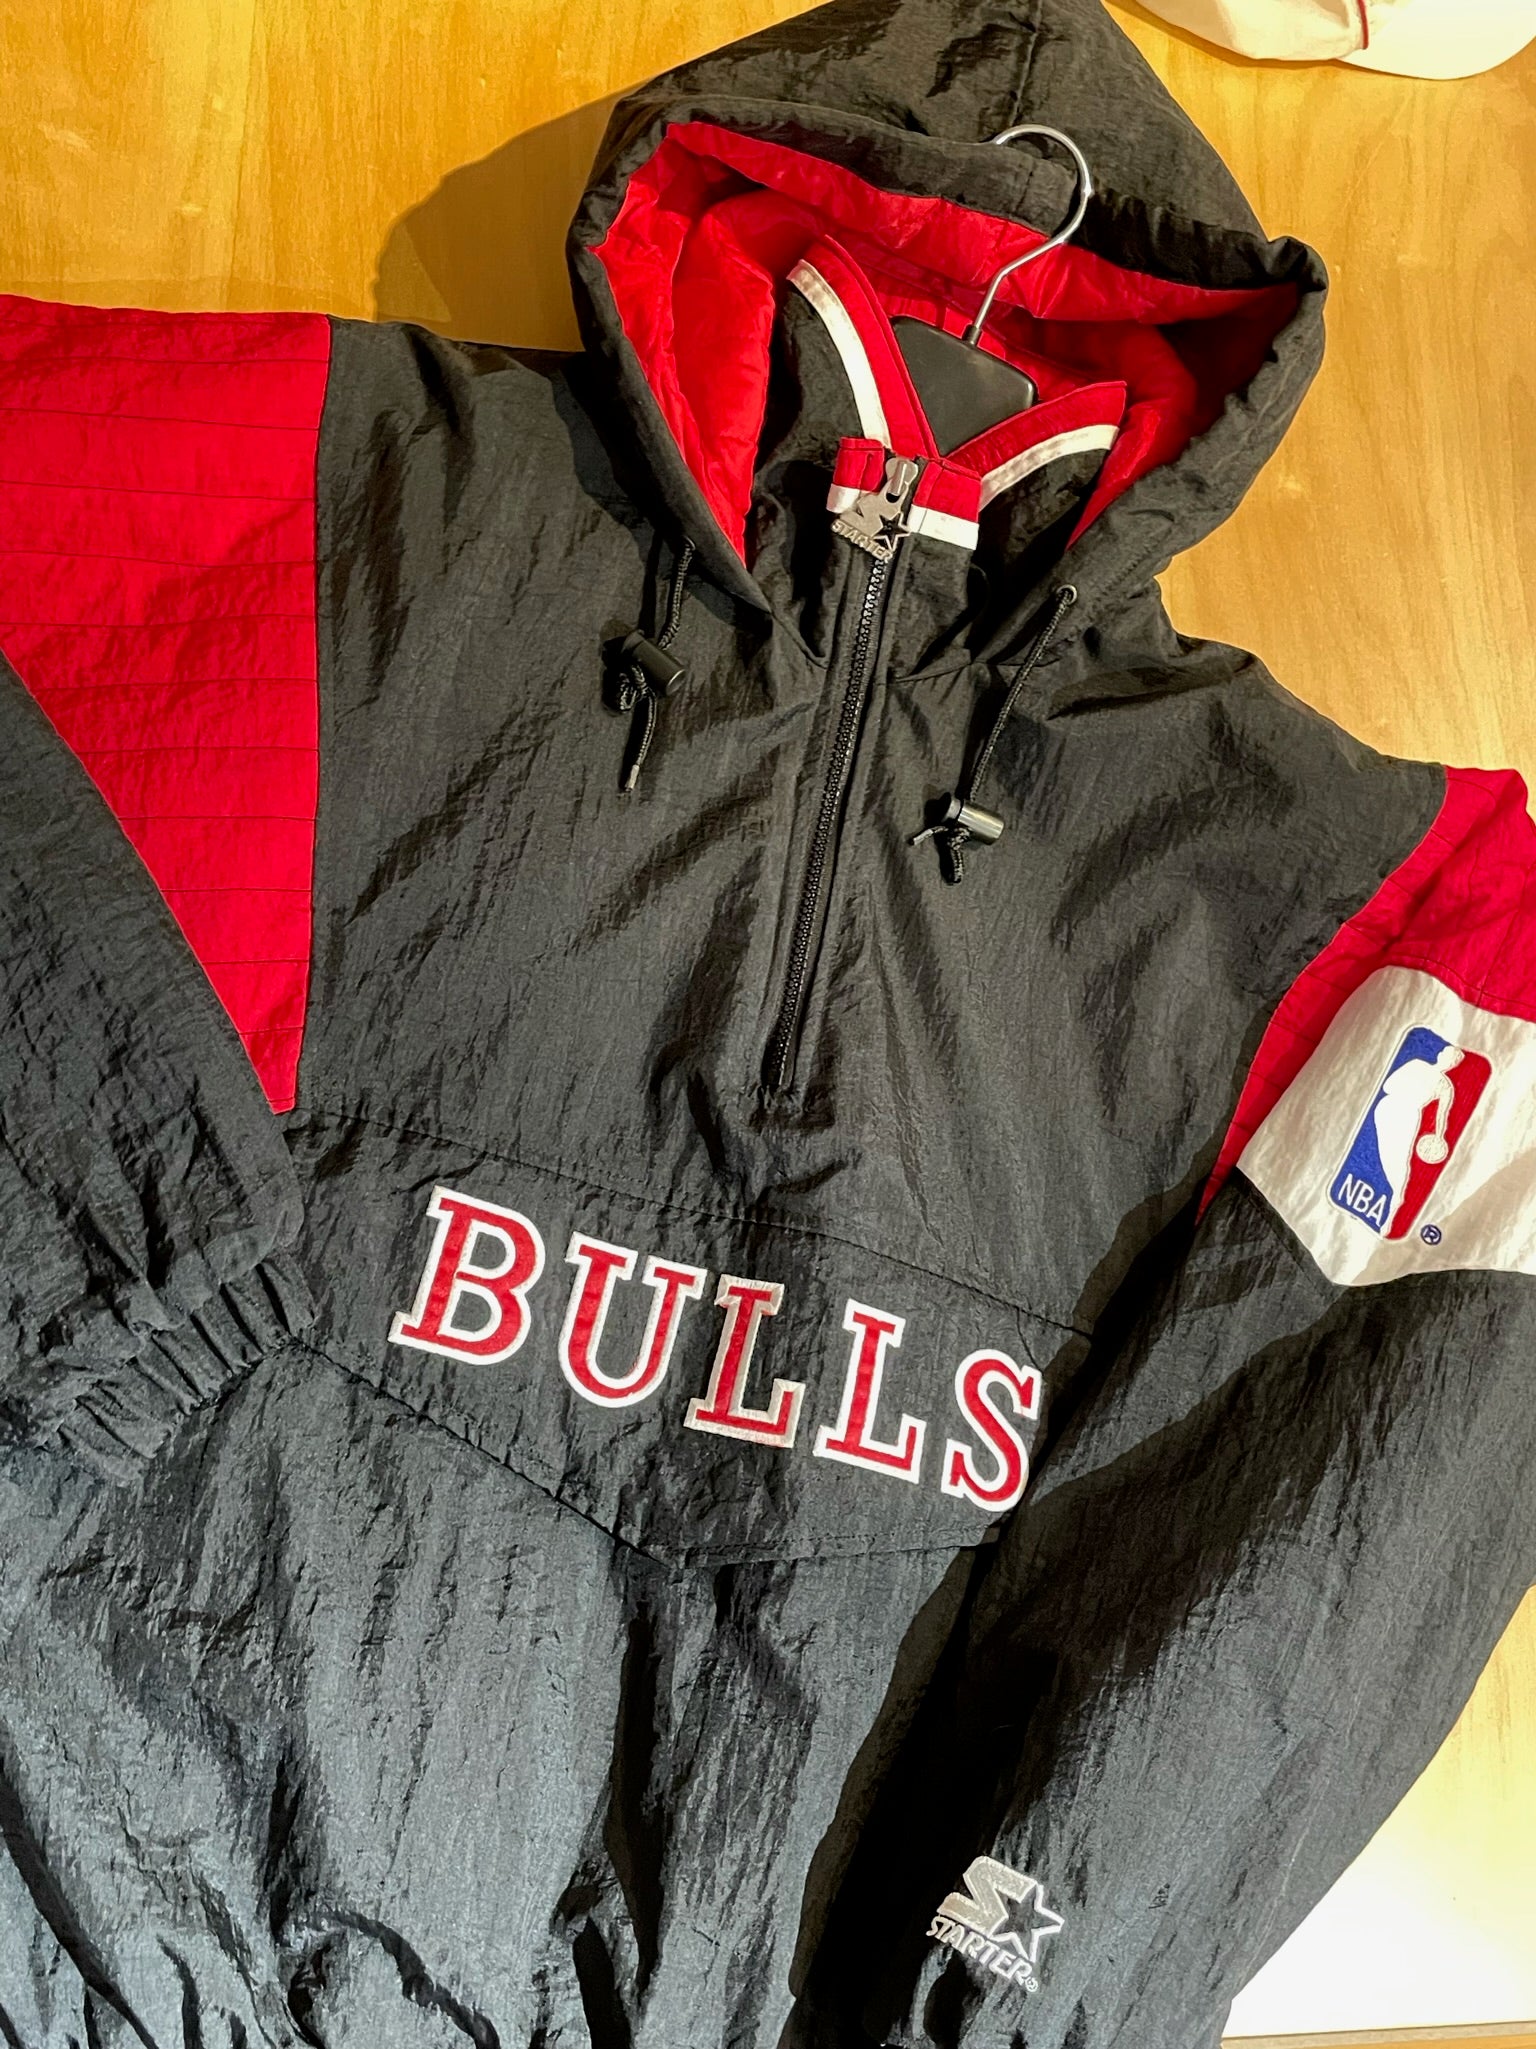 vintage bulls starter jacket